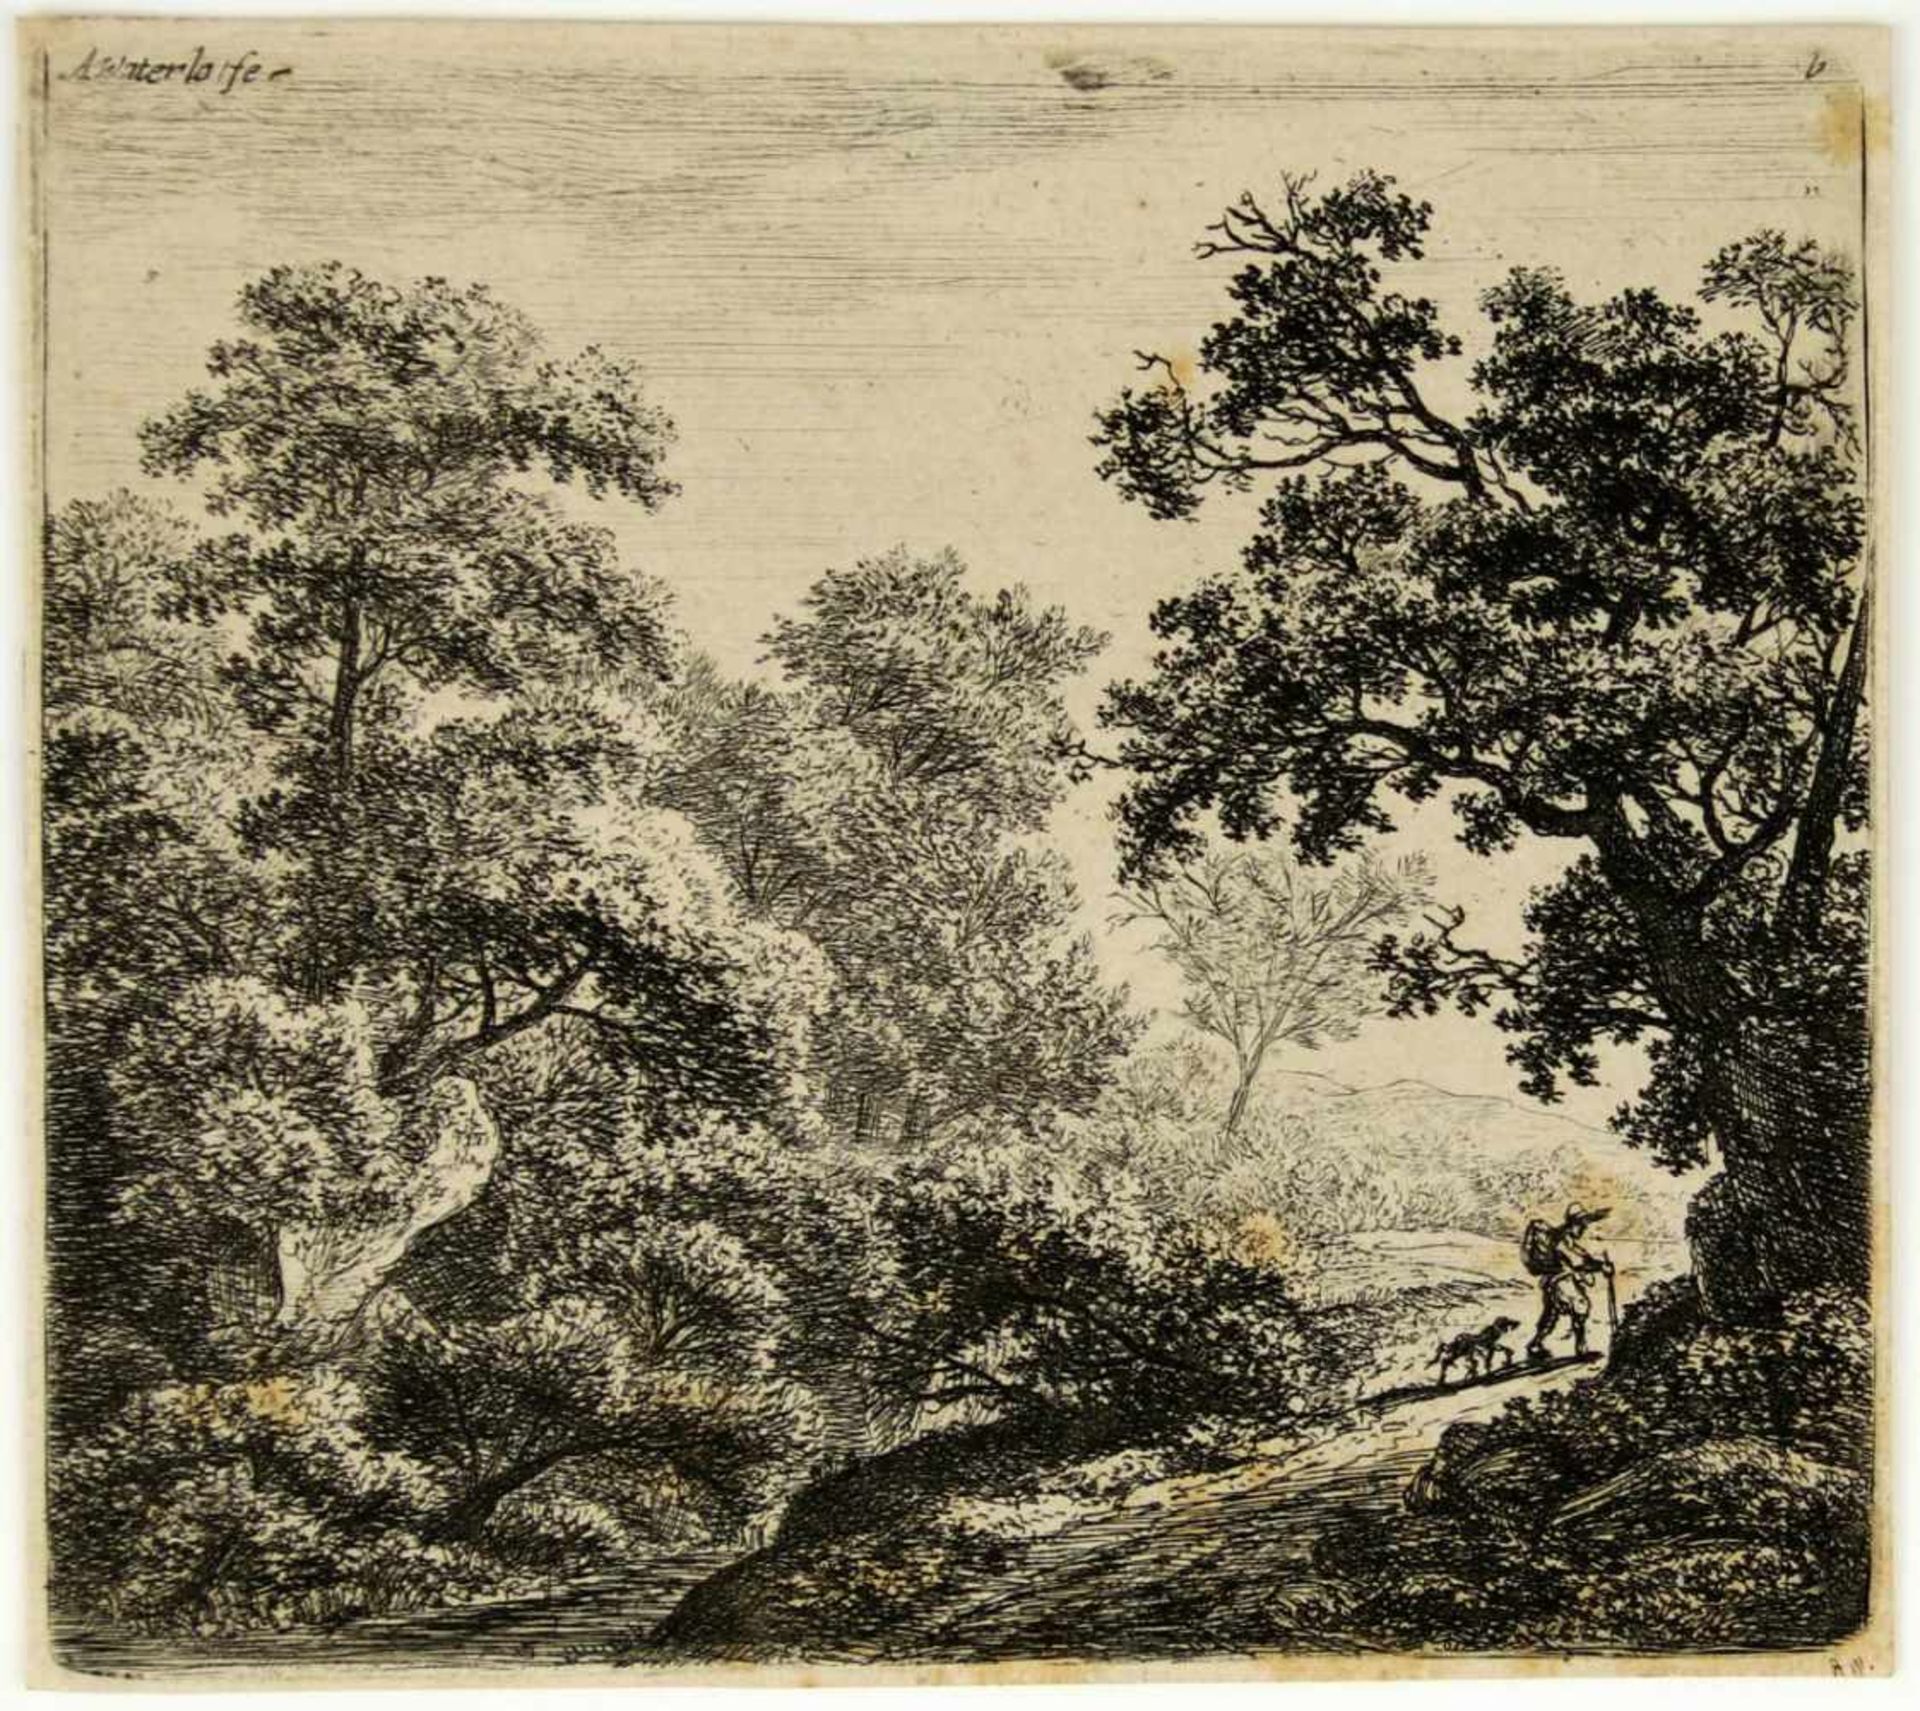 Waterloo, Anthonie. (Um 1610-1690): Der Wanderer mit seinem Hunde. Radierung. Links oben in der